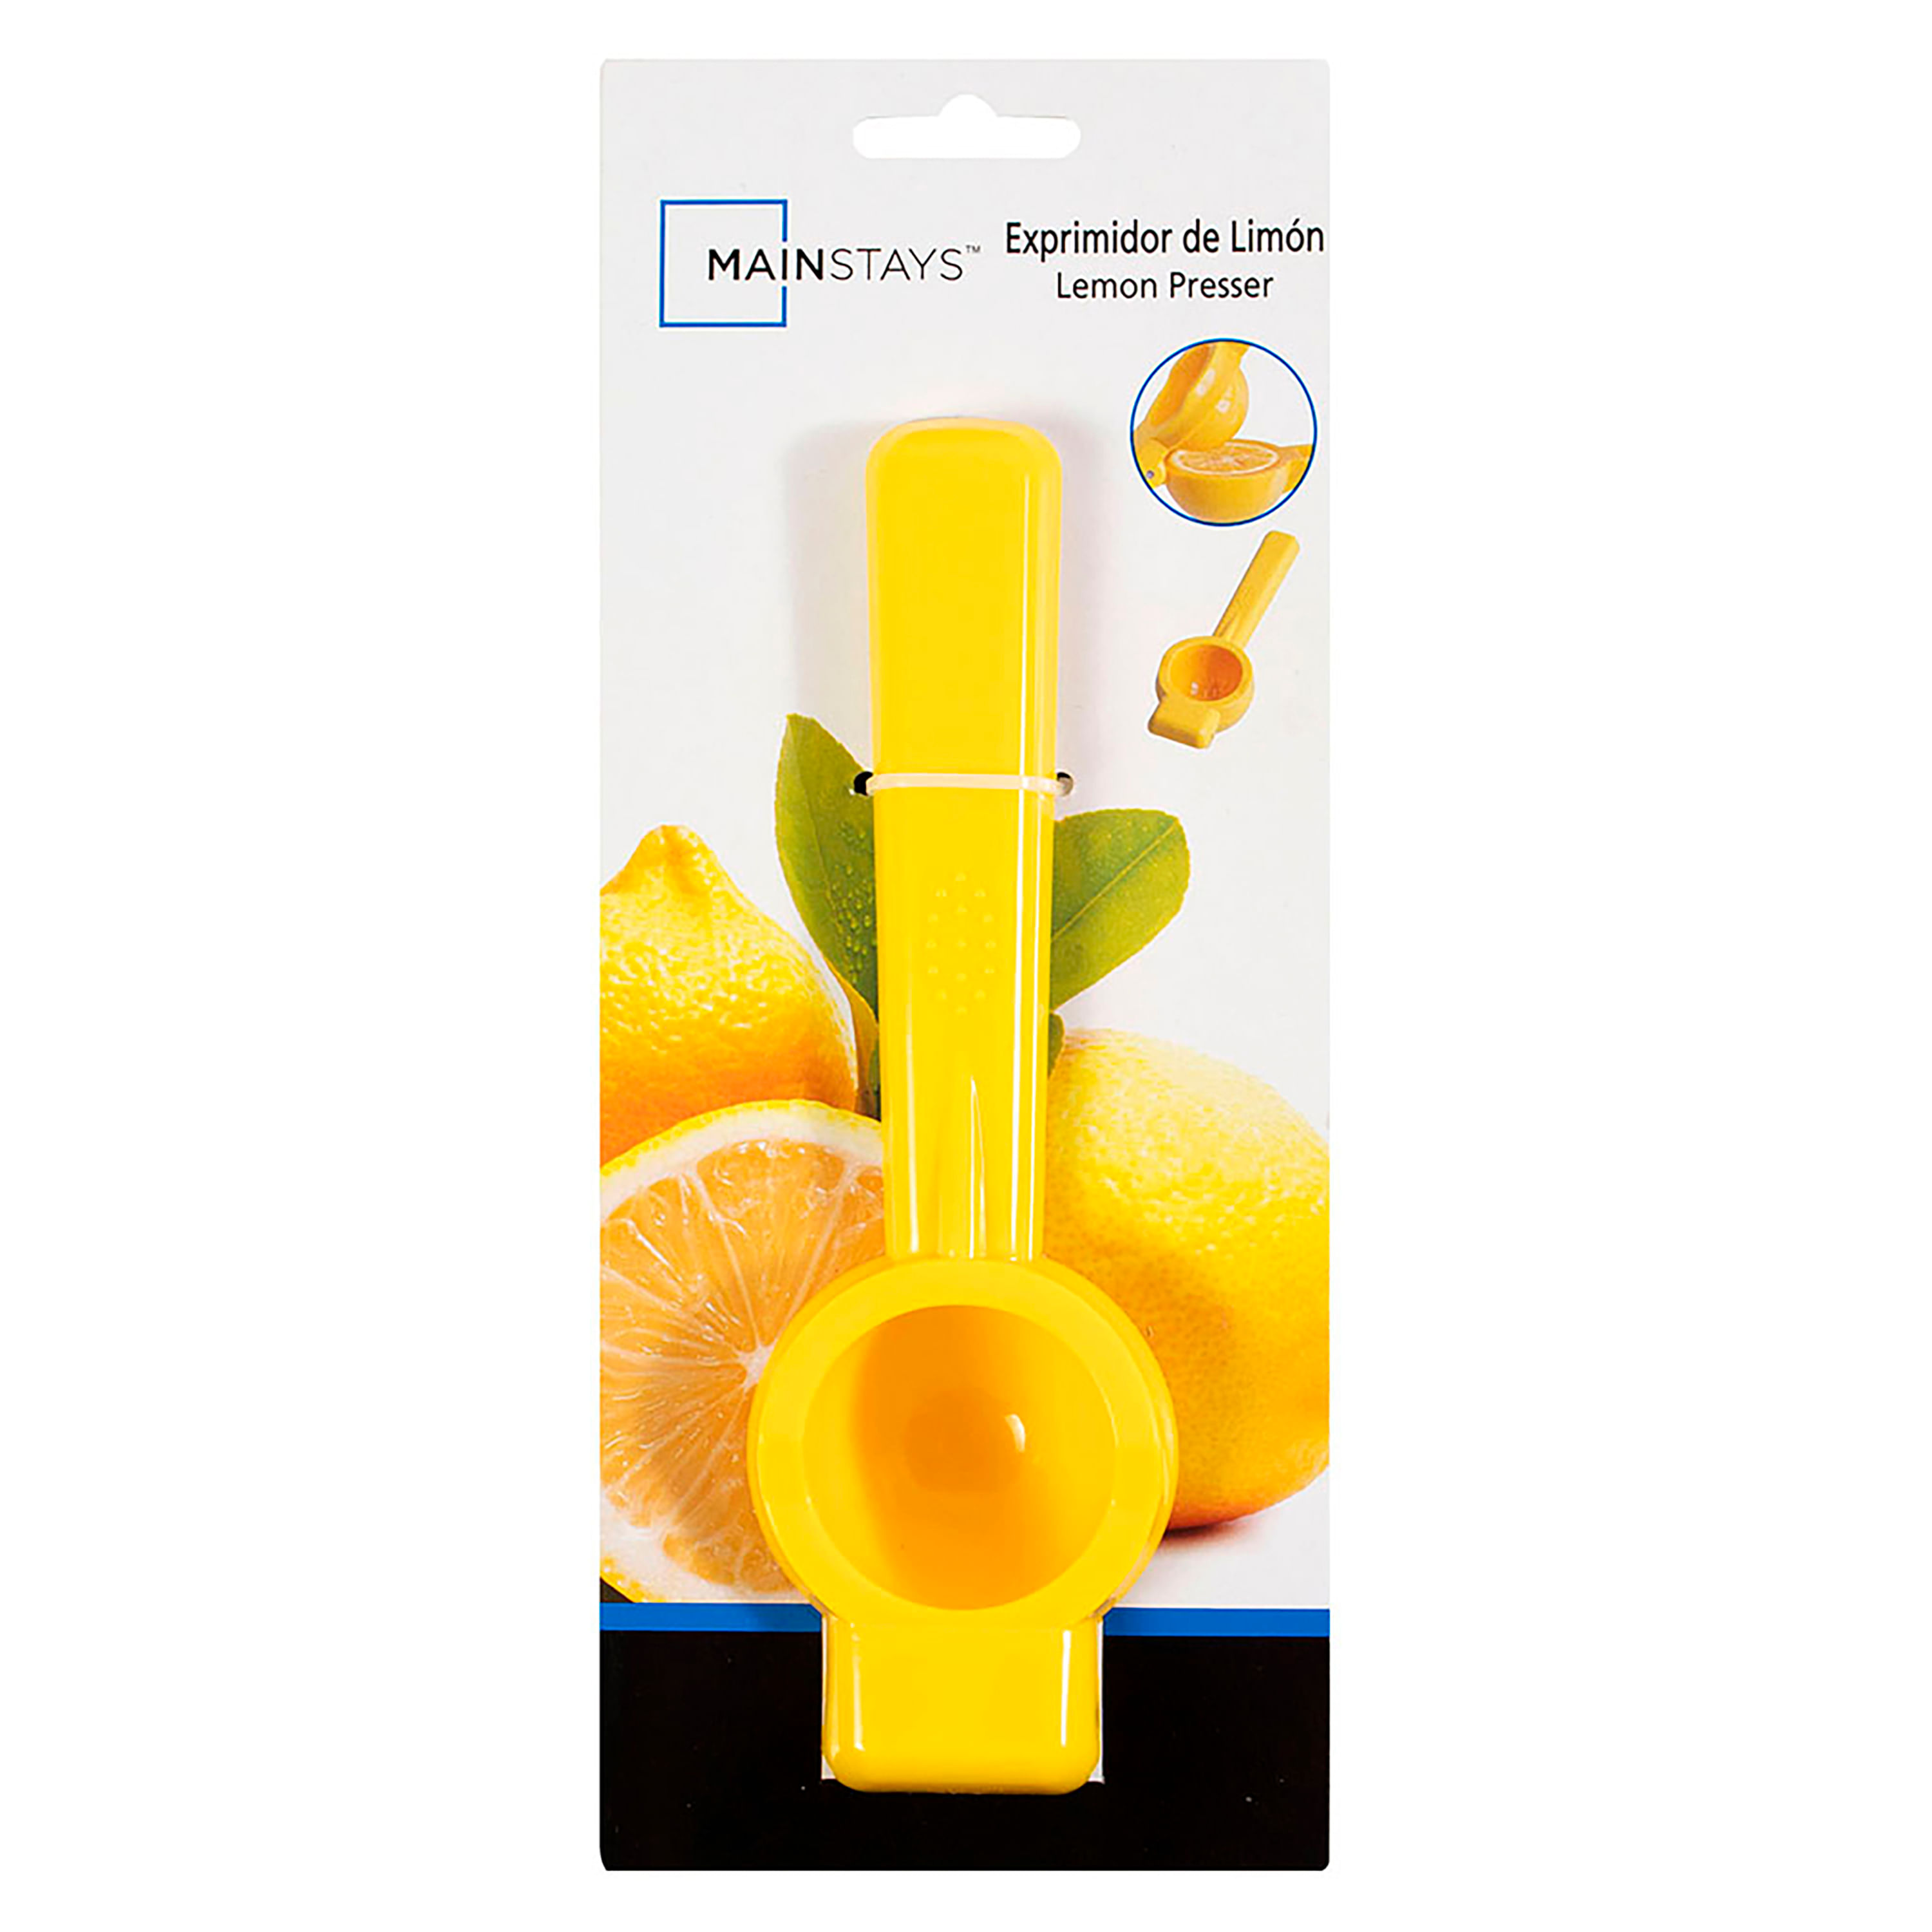 Comprar Exprimidor Limon Mainstays Color Amarillo - Unidad